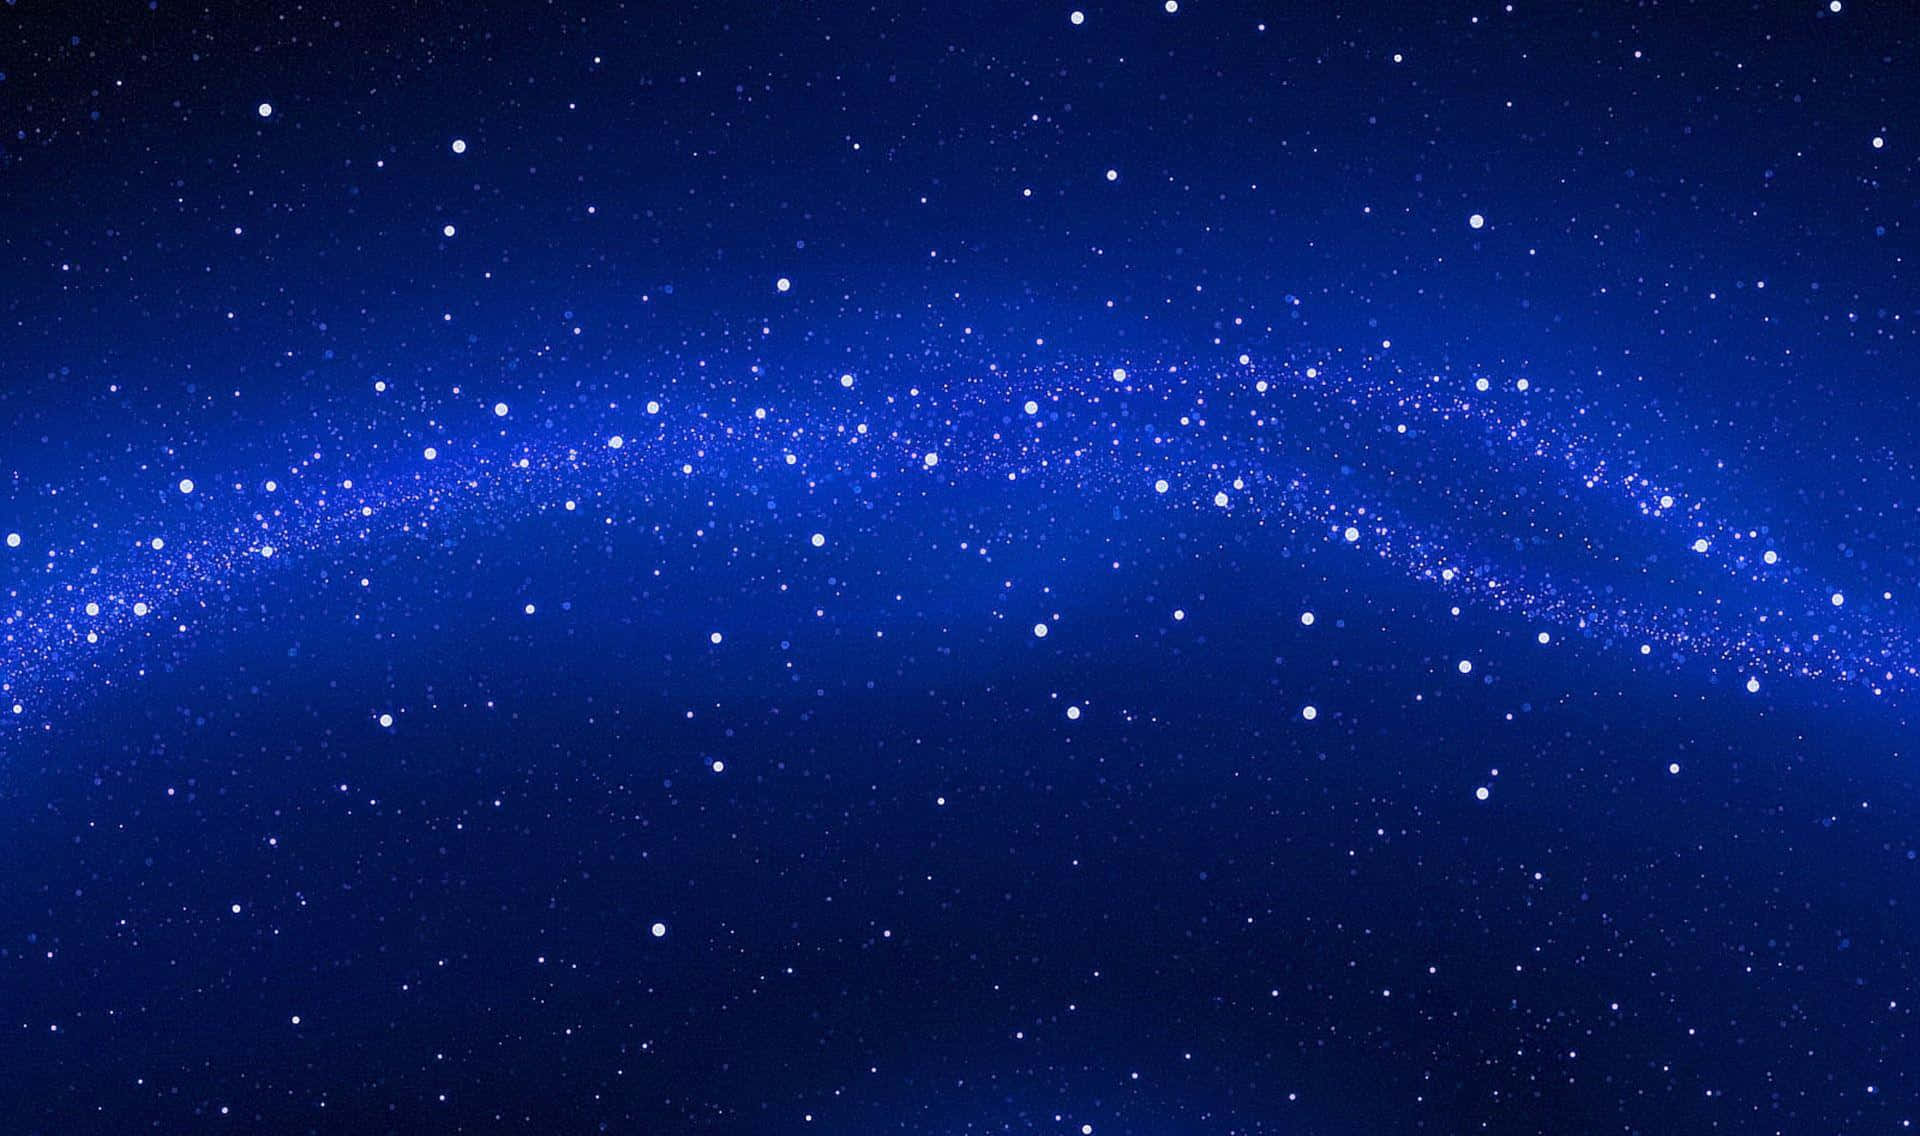 Unavista Impresionante Del Cielo Nocturno, Lleno De Estrellas Deslumbrantes.